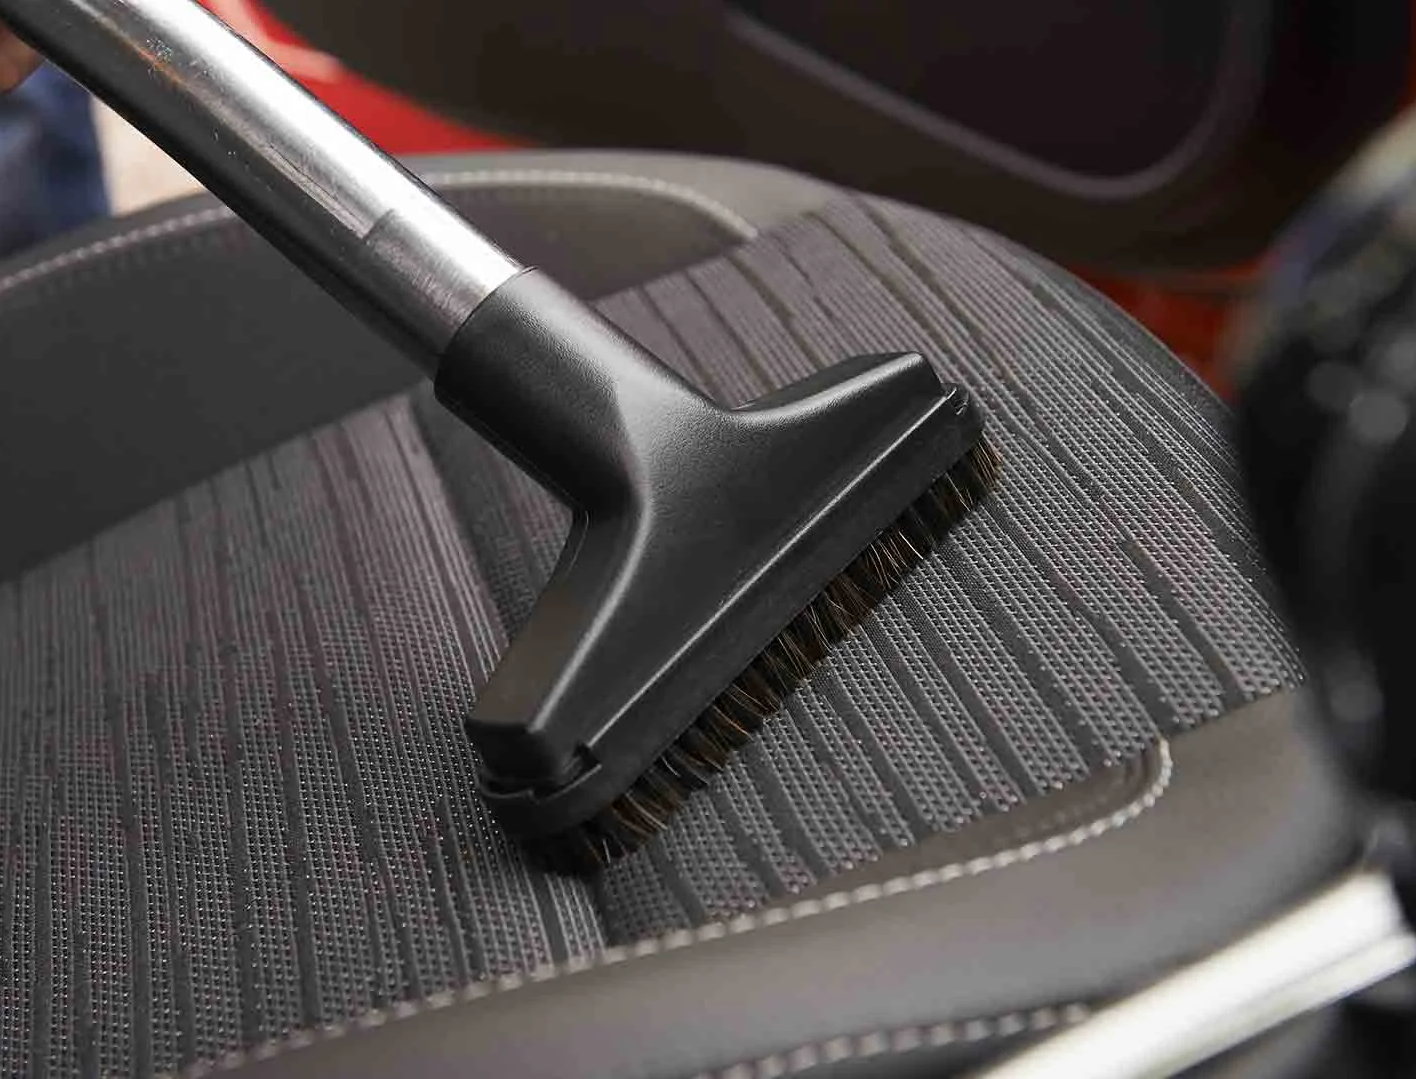 Limpieza interior del coche: 10 trucos para que quede impecable